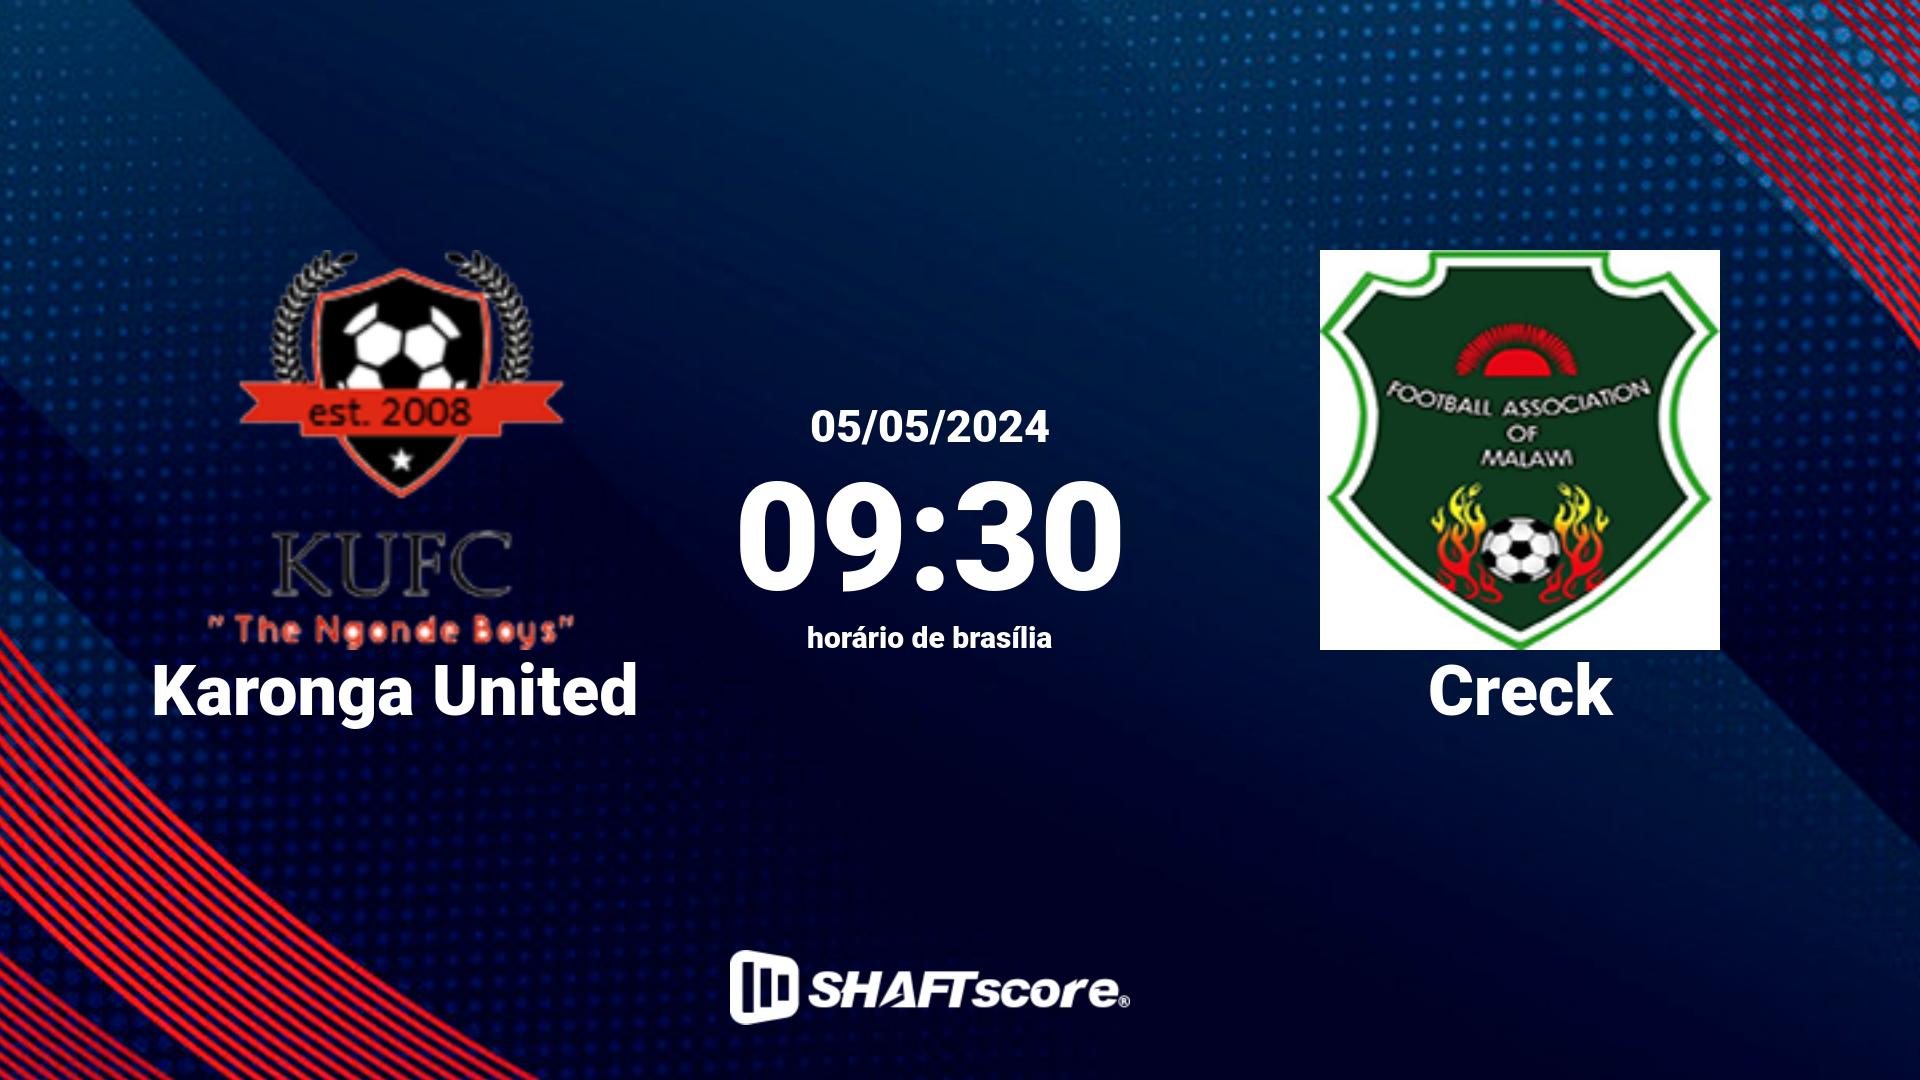 Estatísticas do jogo Karonga United vs Creck 05.05 09:30